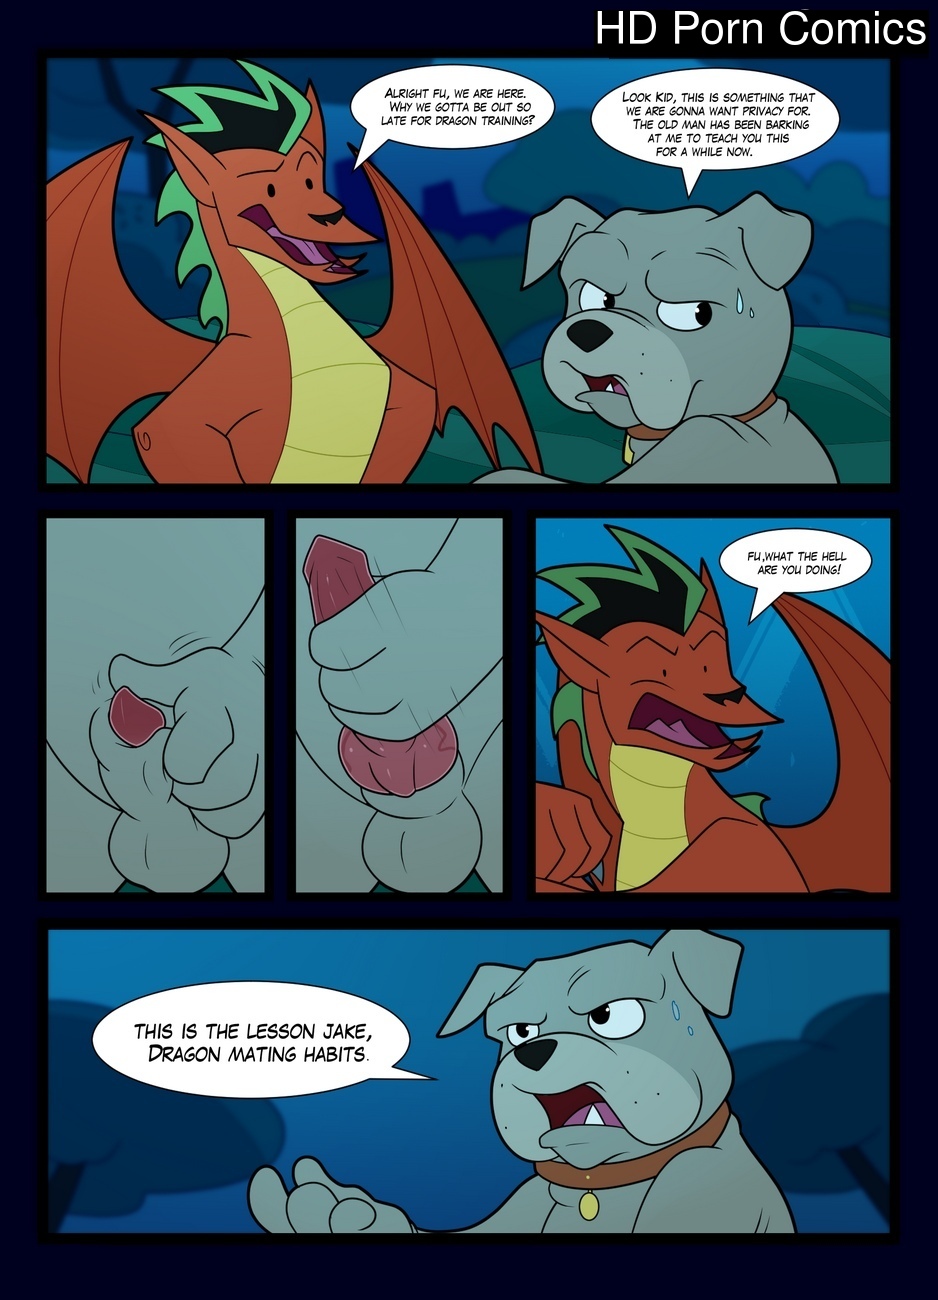 Furry dragon porn comics